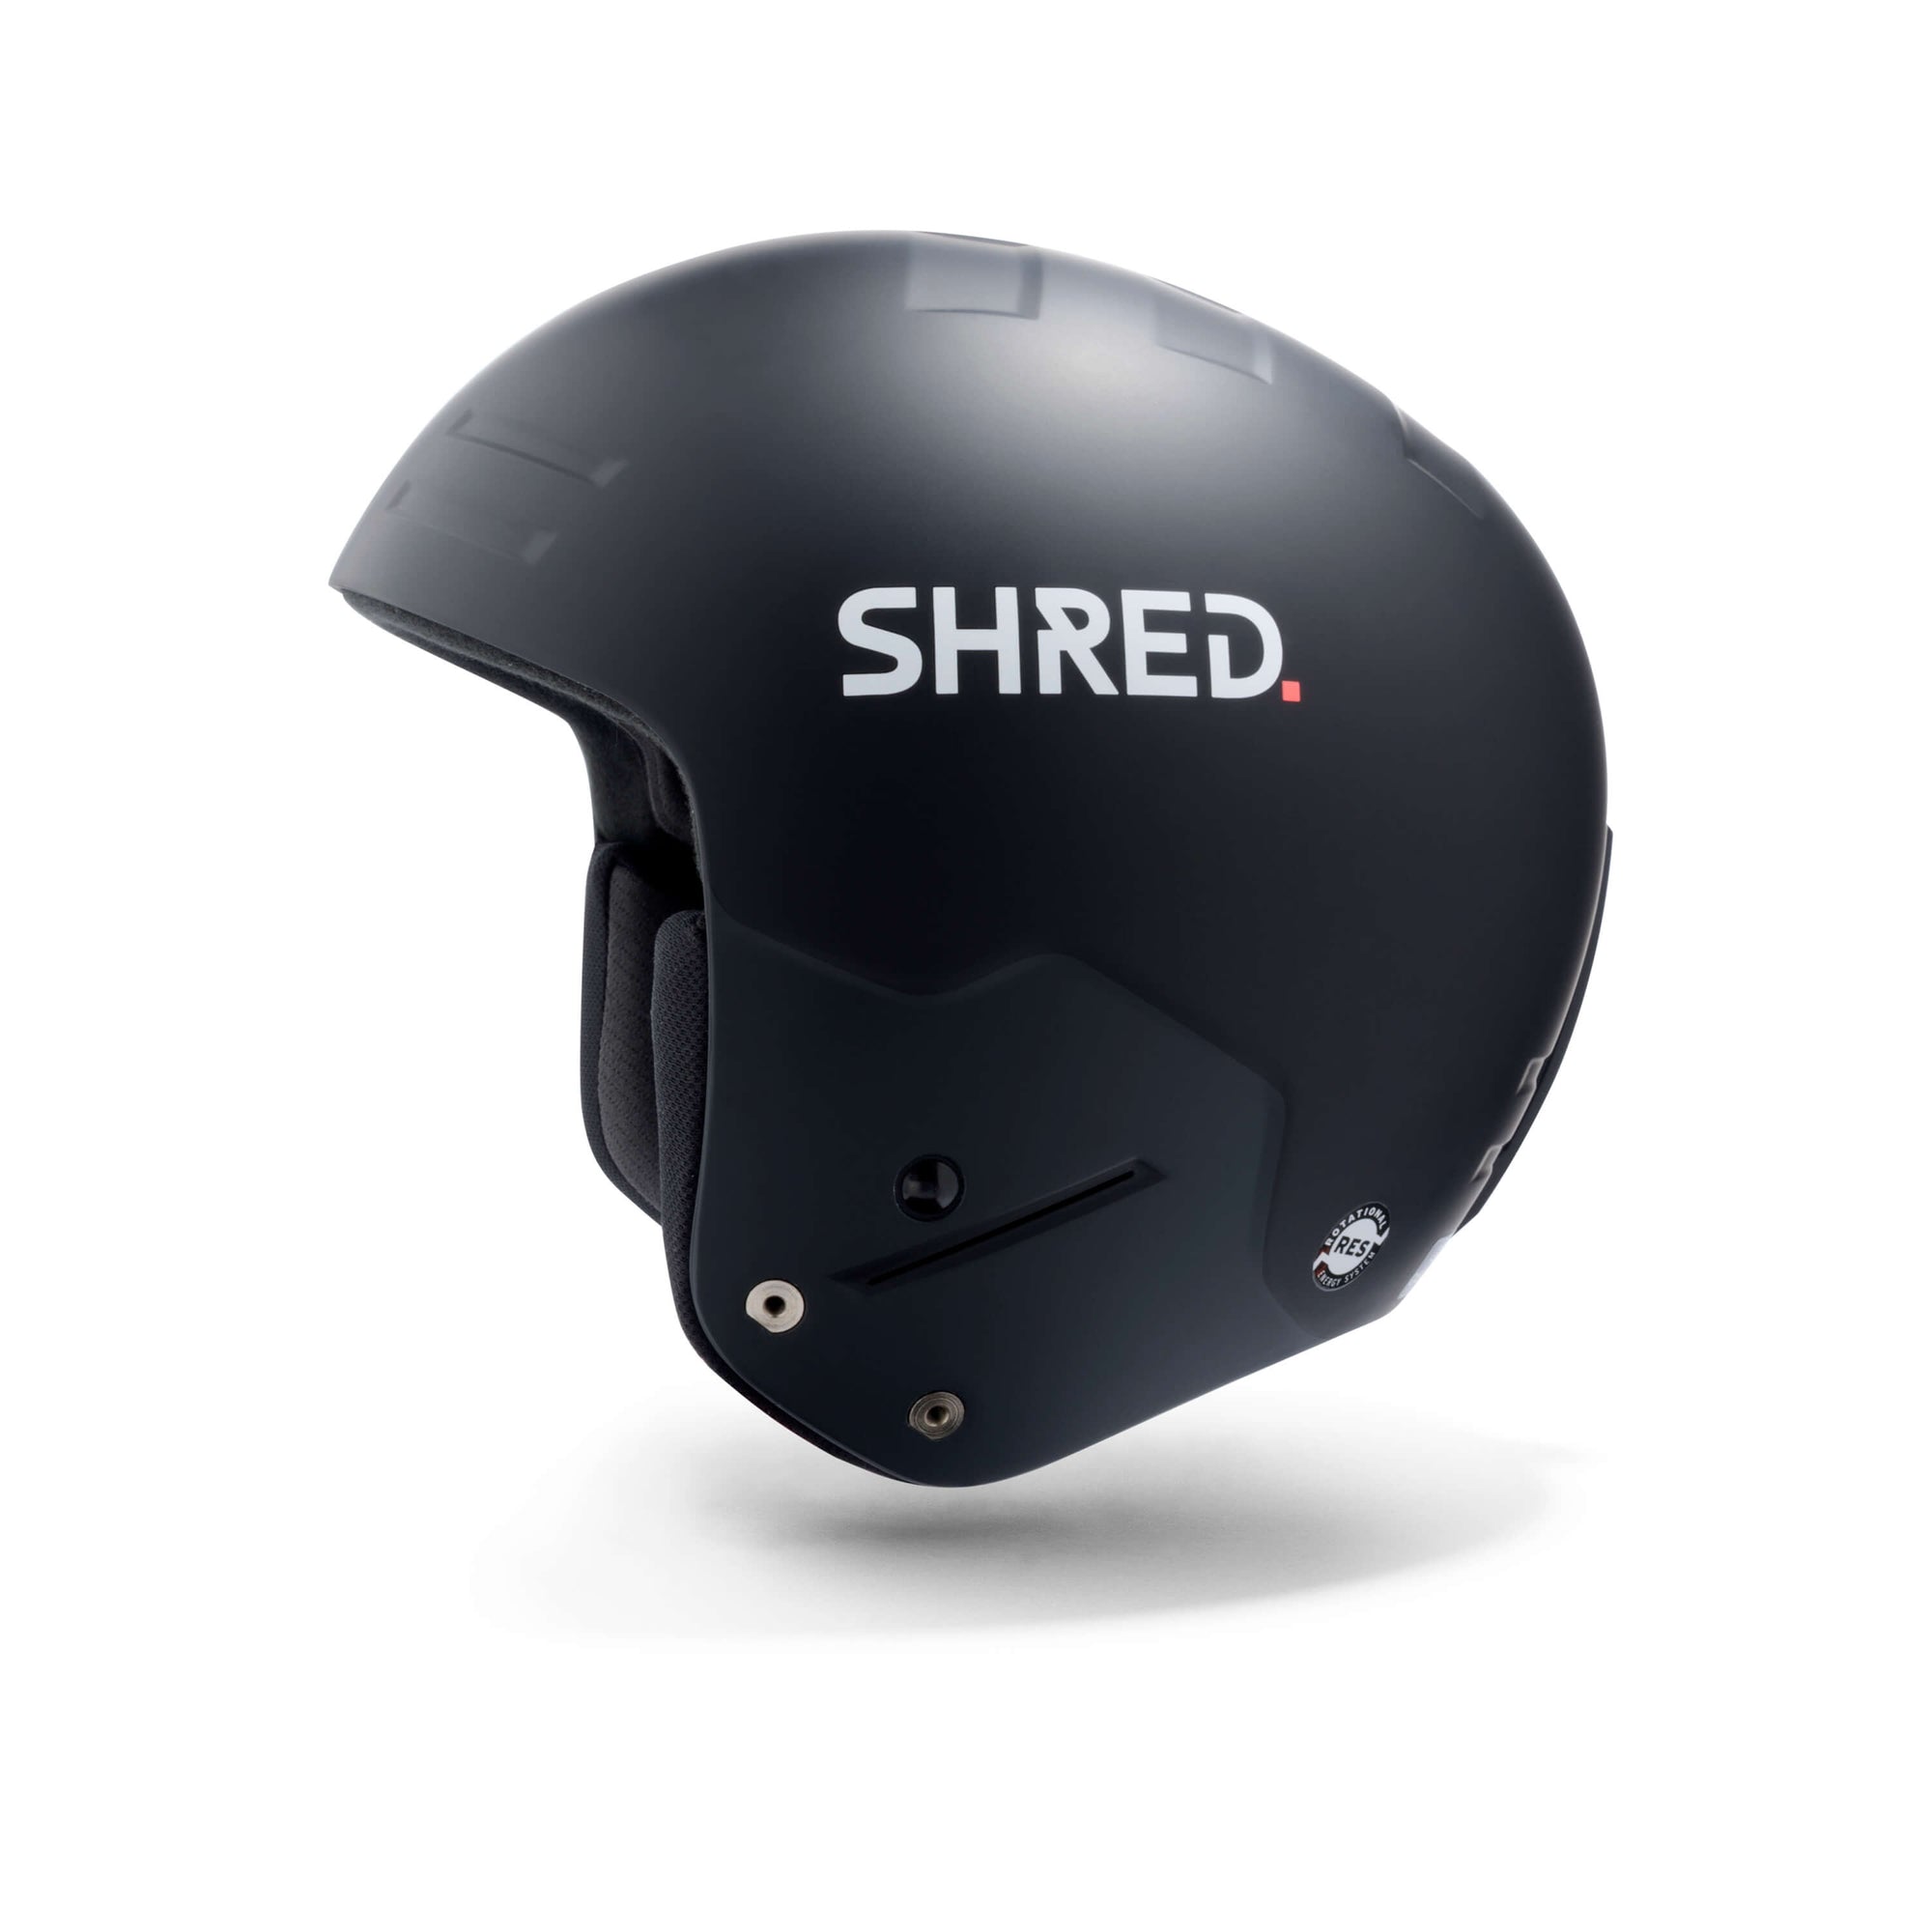 Basher Ultimate - Ski Helmets|HEBSUJ11L,HEBSUJ11M,HEBSUJ11S